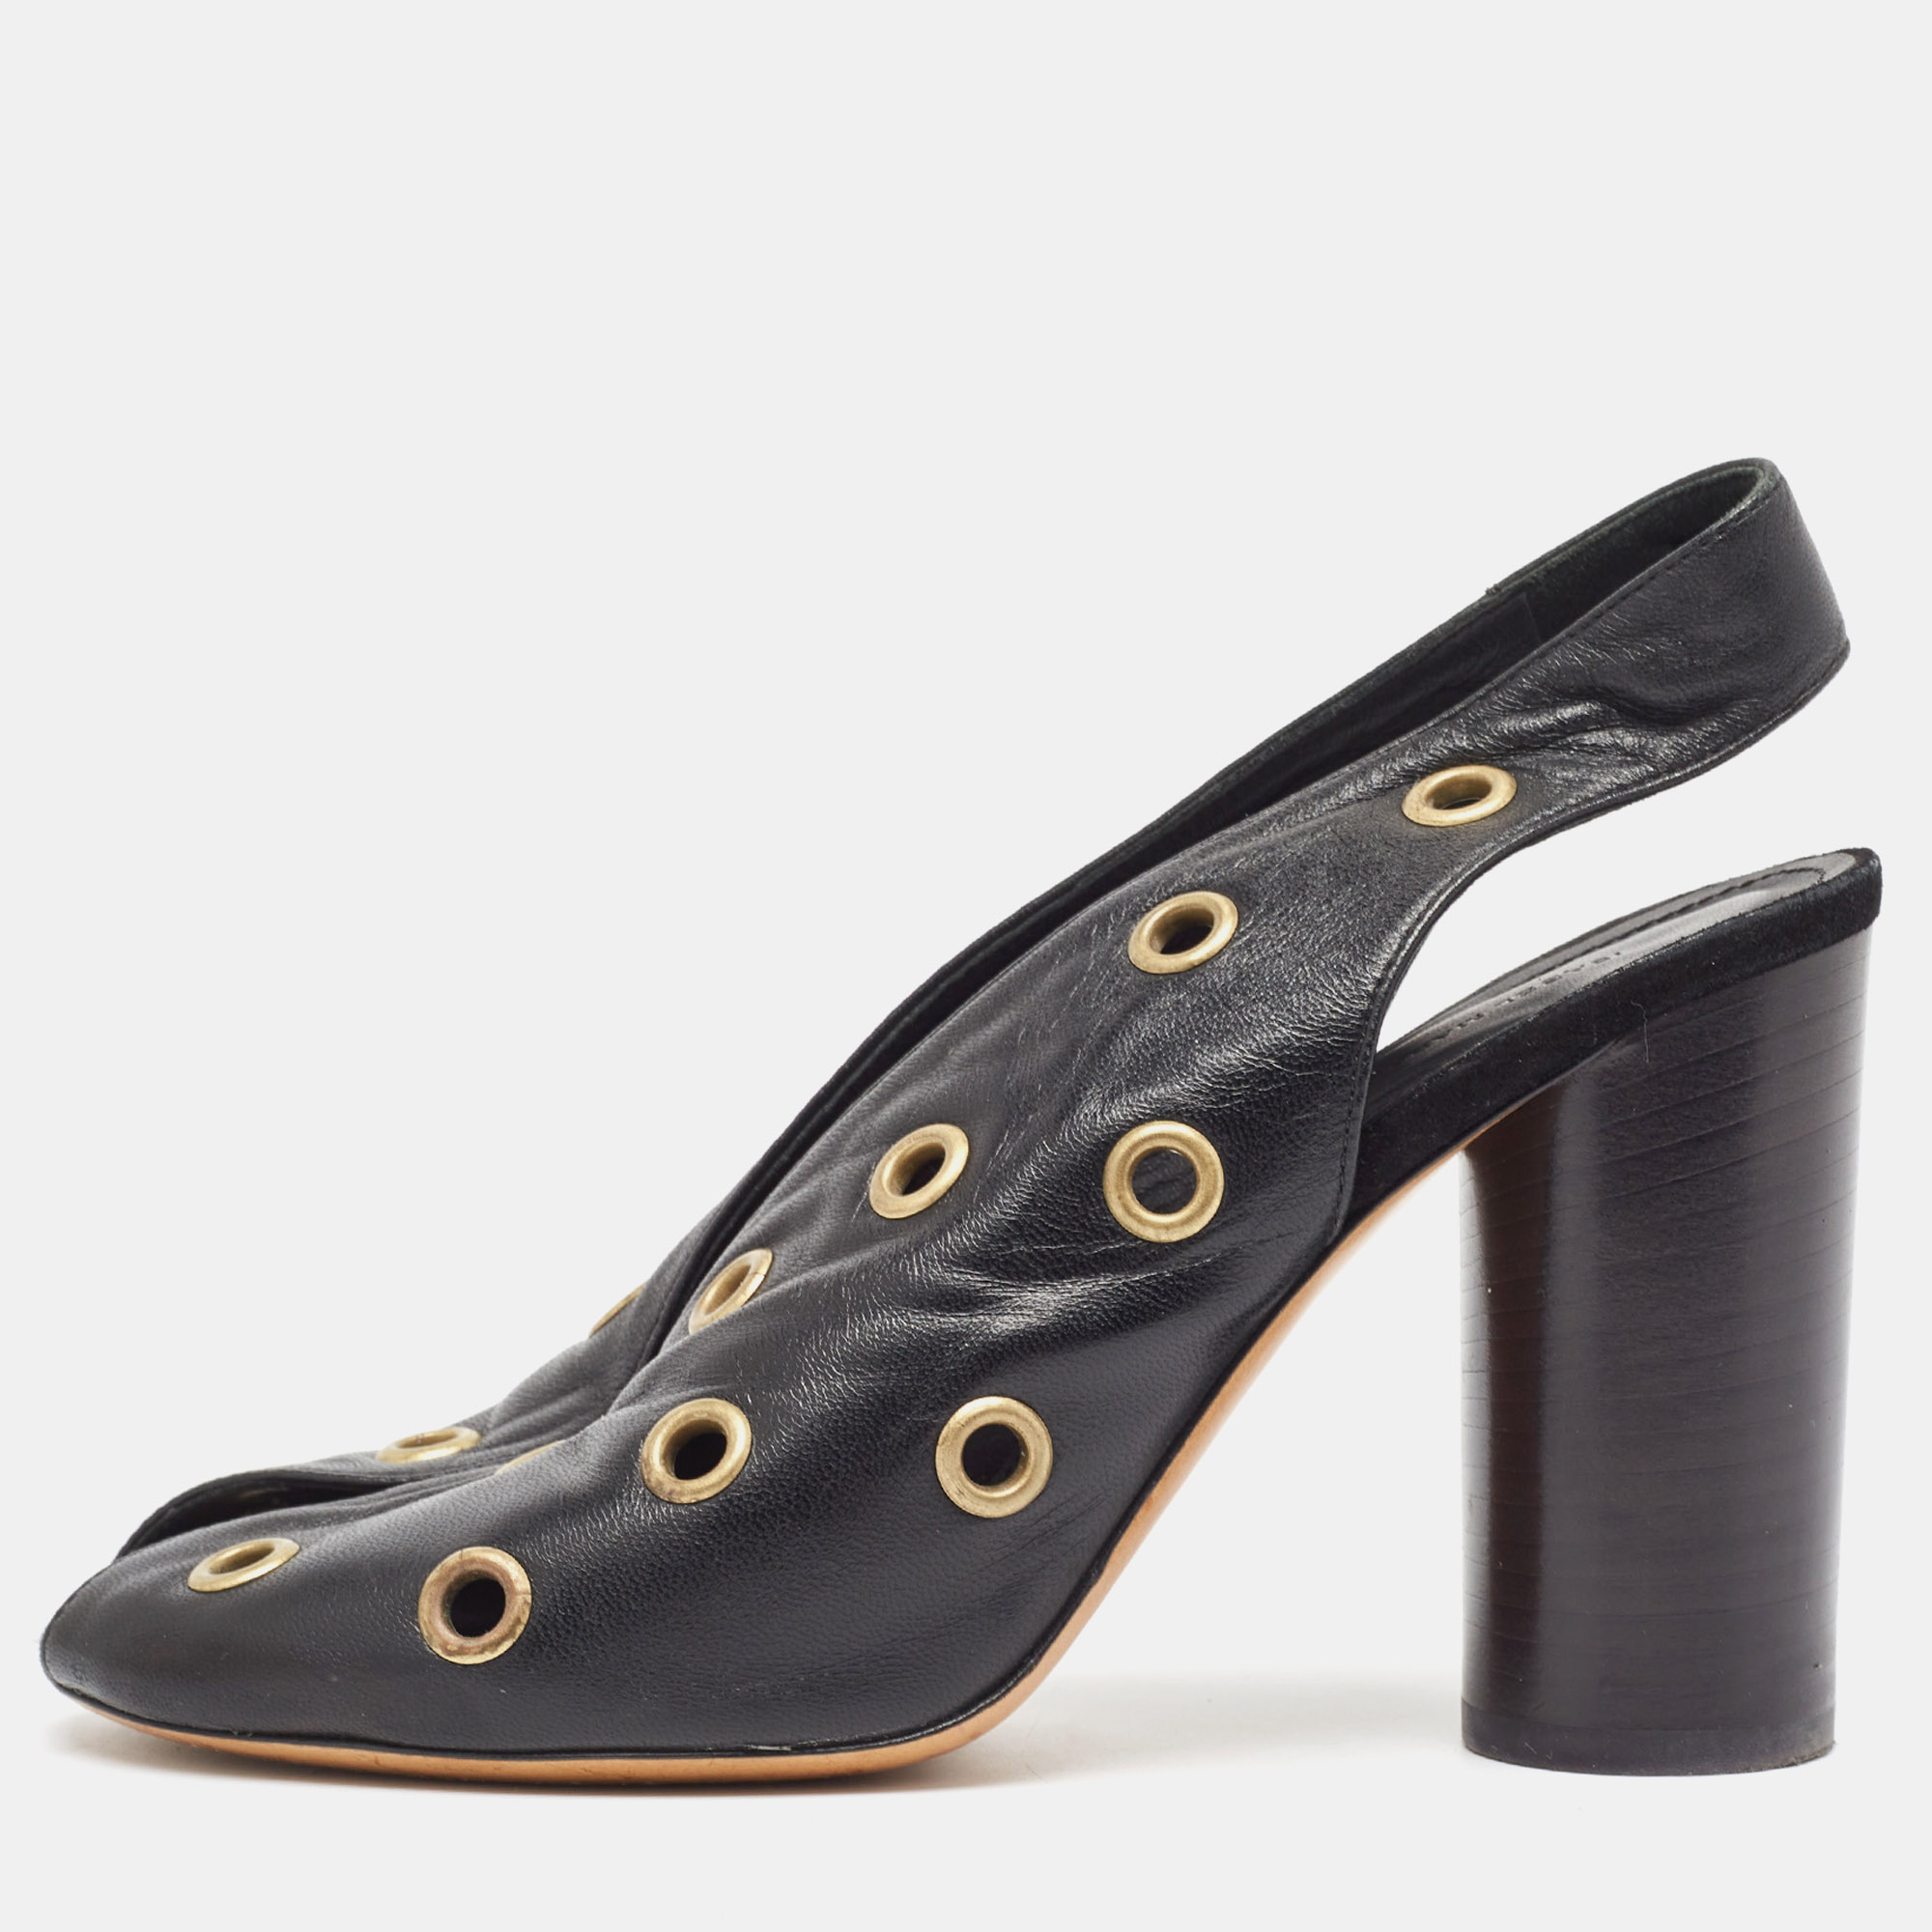 Pre-owned Isabel Marant Black Leather Embellished Slingback Sandals Size 37